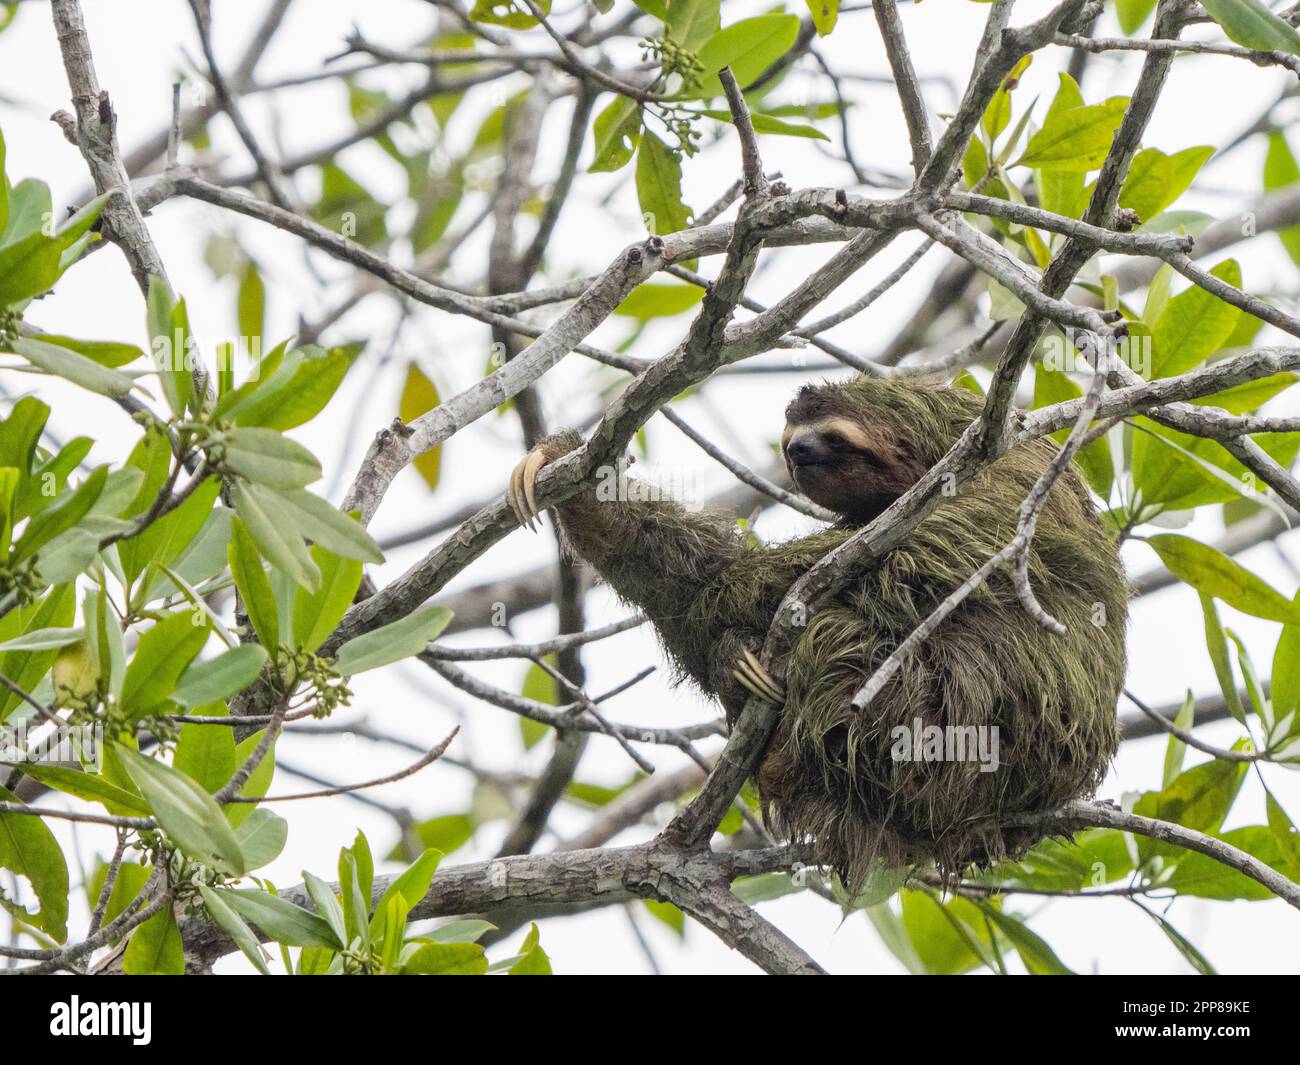 Paresseux à gorge brune (Bradypus variegatus), rivière Sierpe, Costa Rica Banque D'Images